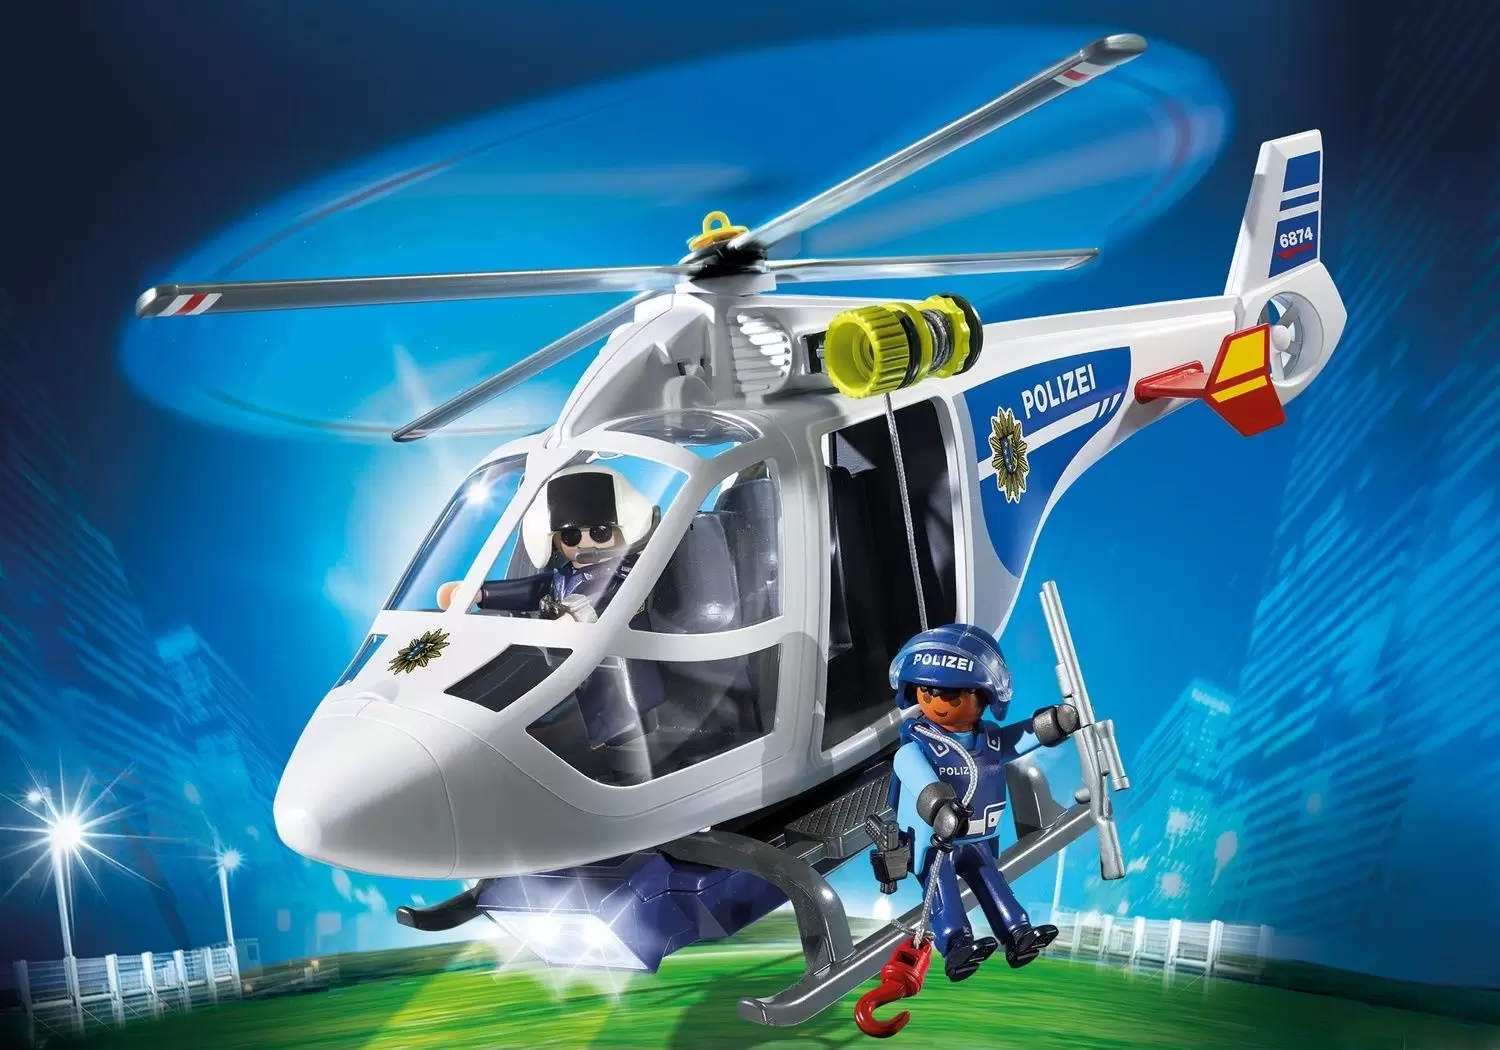 Playmobil Policier - Hélicoptère Police Allemande avec projecteur à LED (Polizei)